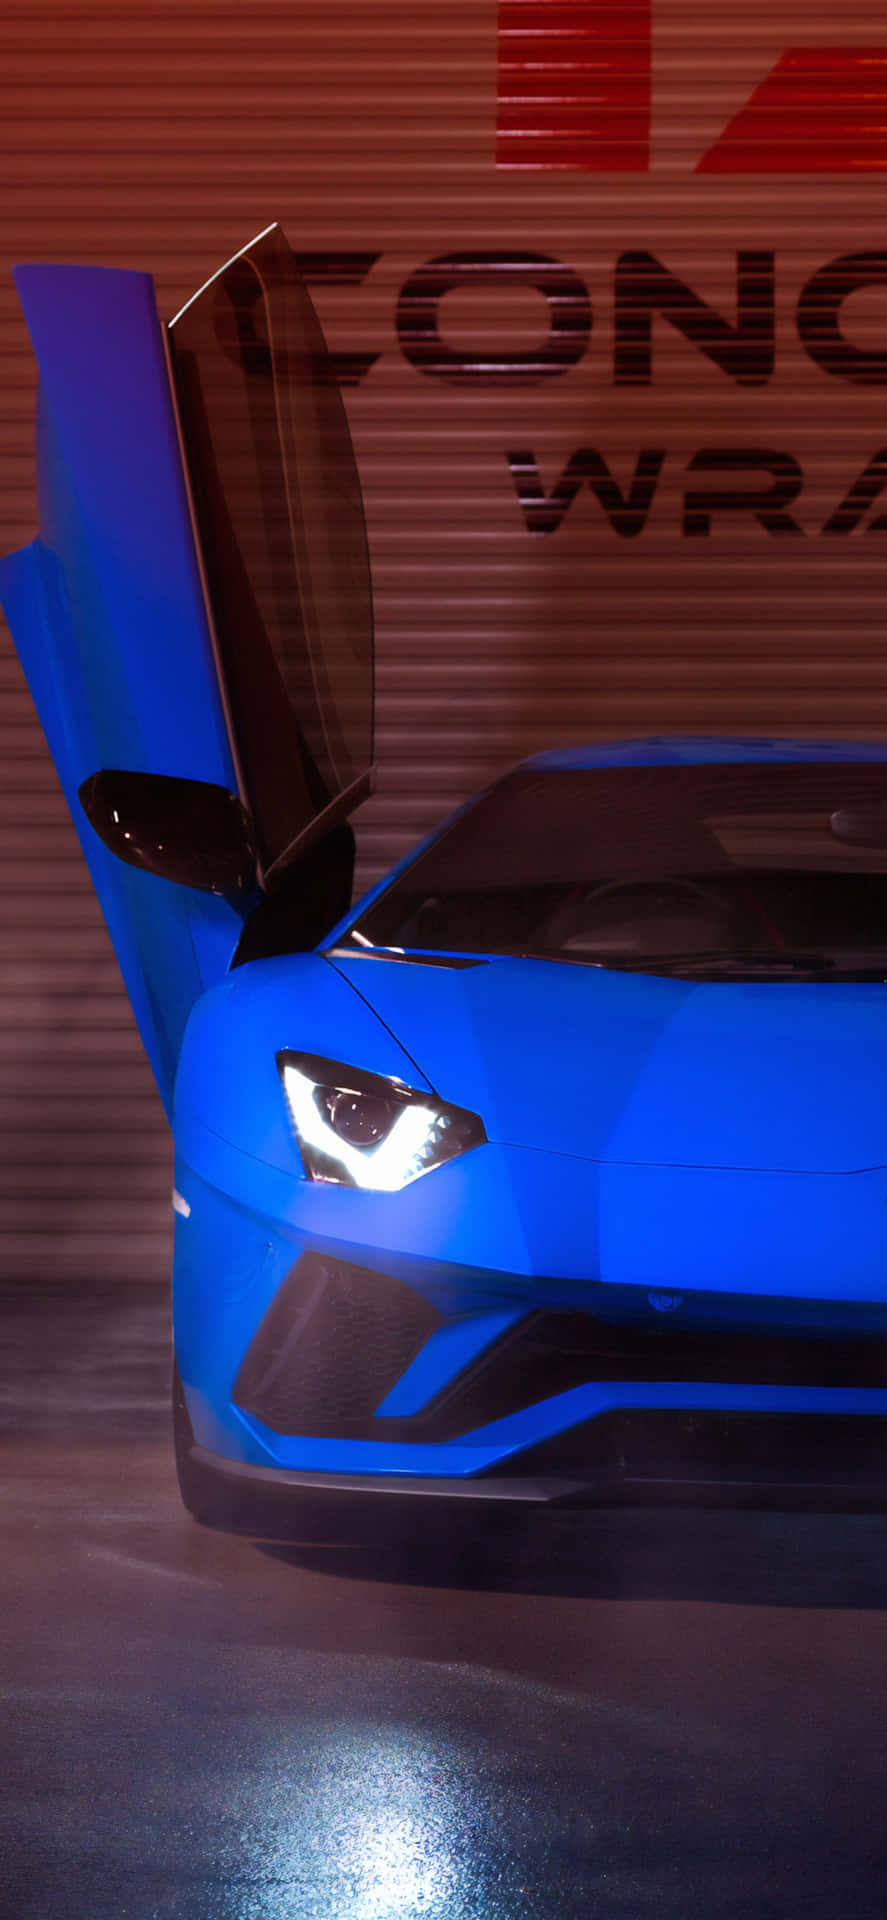 Sleek and Stylish Blue Lamborghini Wallpaper